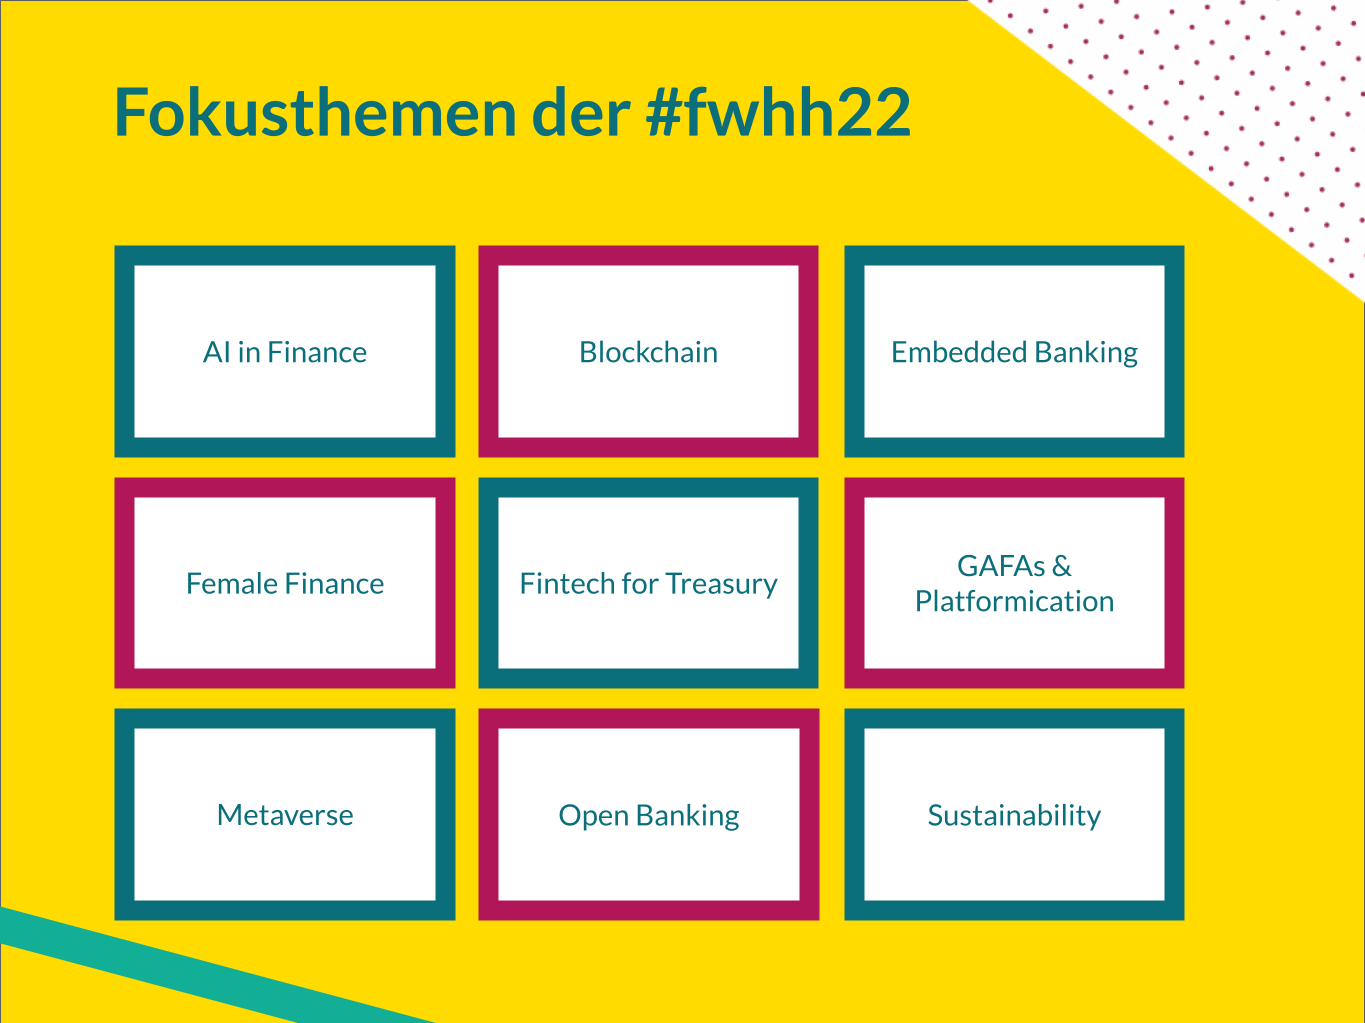 Fokusthemen der Fintech Week 2022 #fwhh22